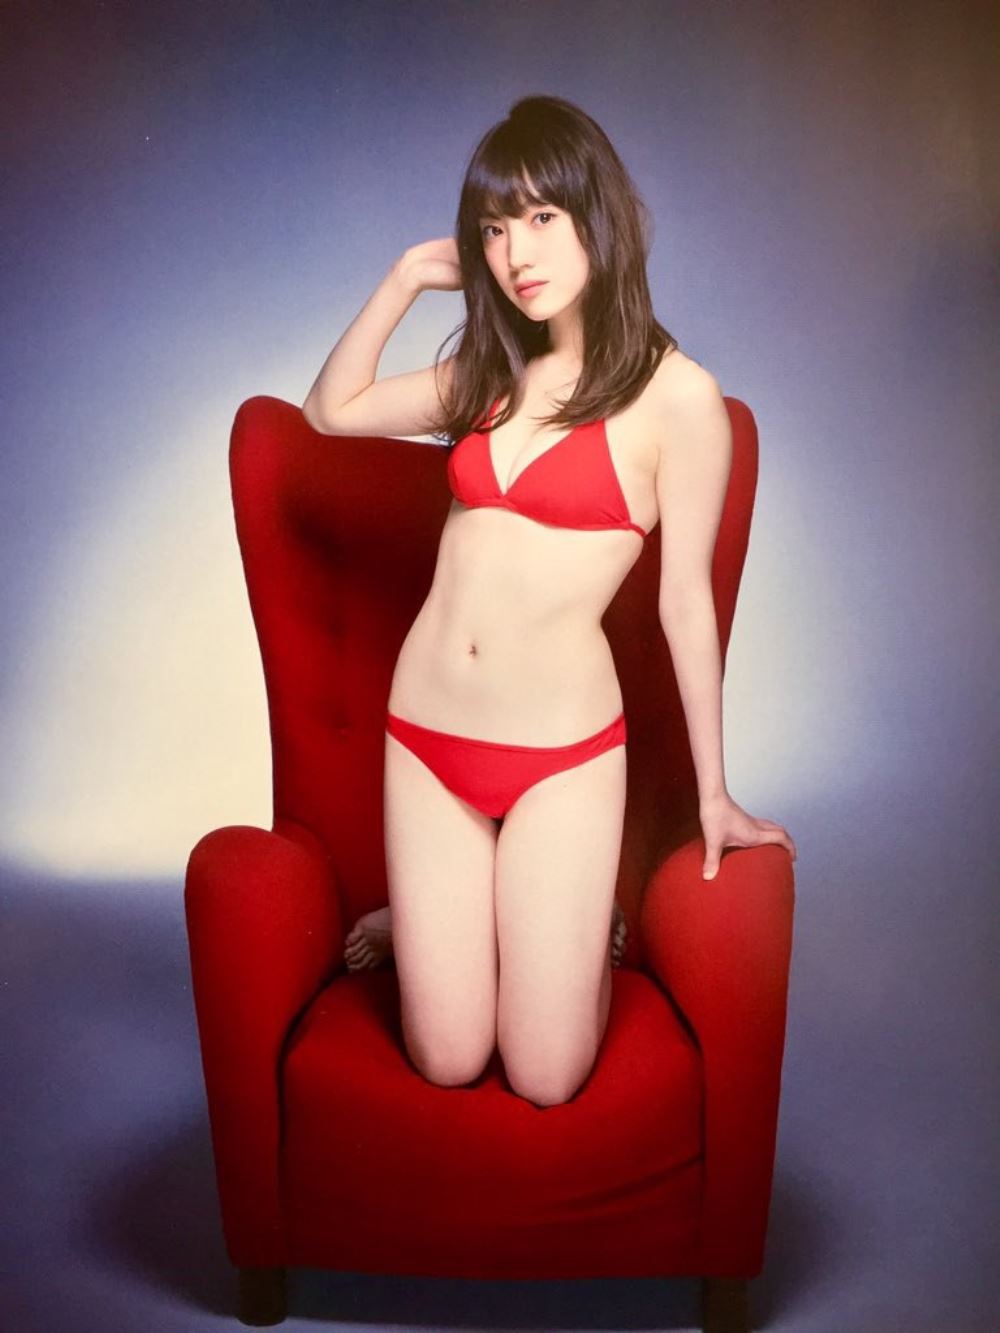 太田夢莉 1万年に1人 可愛い アイドル 水着 画像 73